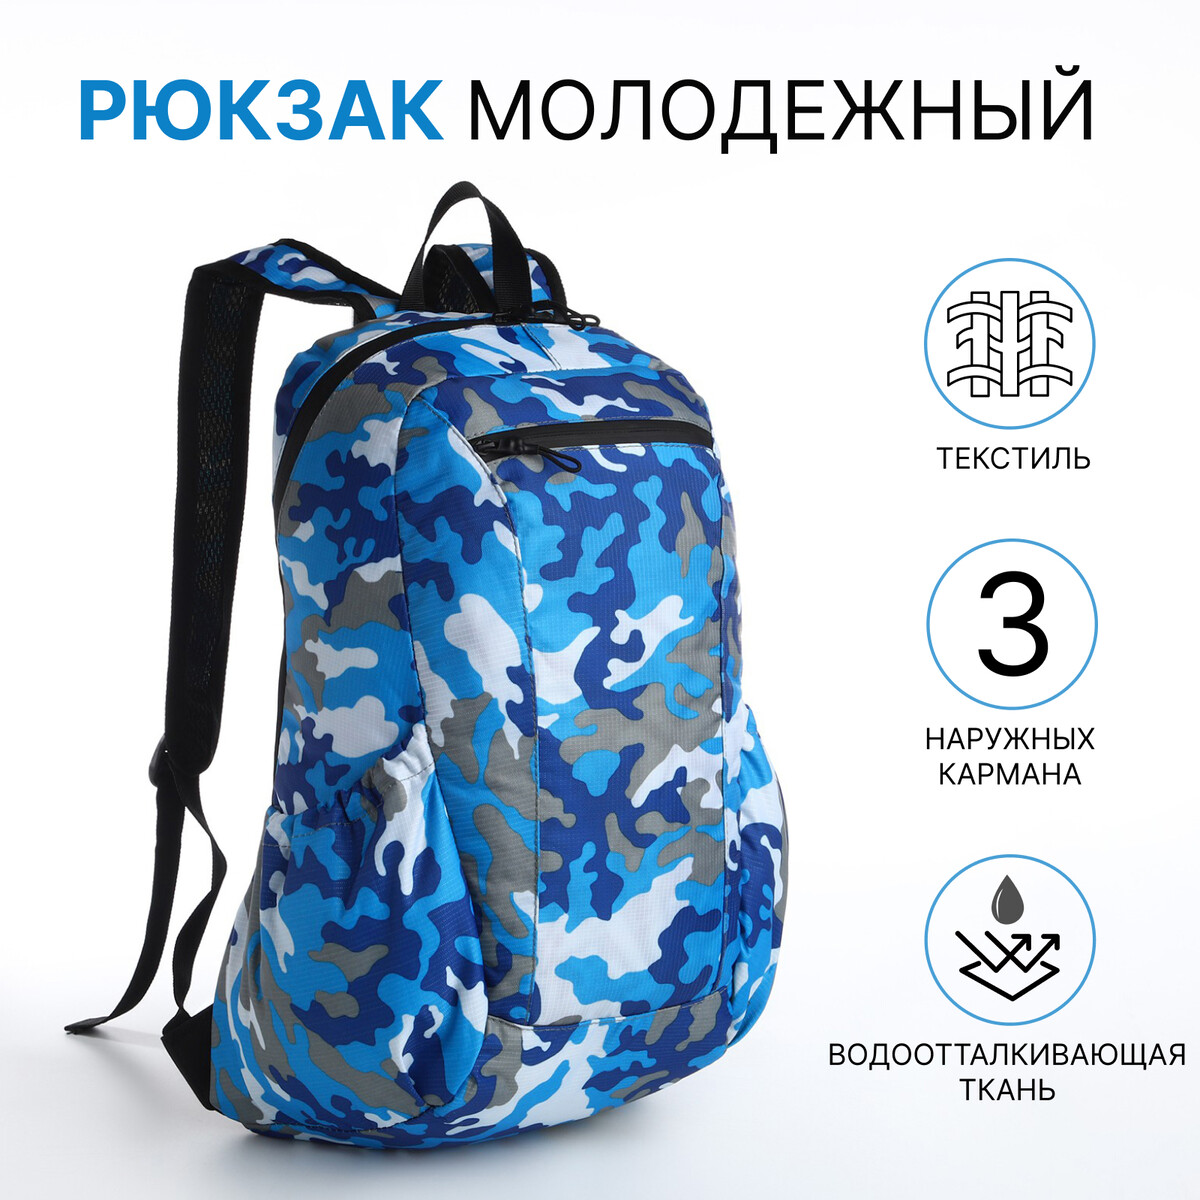 Рюкзак молодежный, водонепроницаемый на молнии, 3 кармана, цвет голубой/синий рюкзак молодежный водонепроницаемый на молнии 3 кармана зеленый